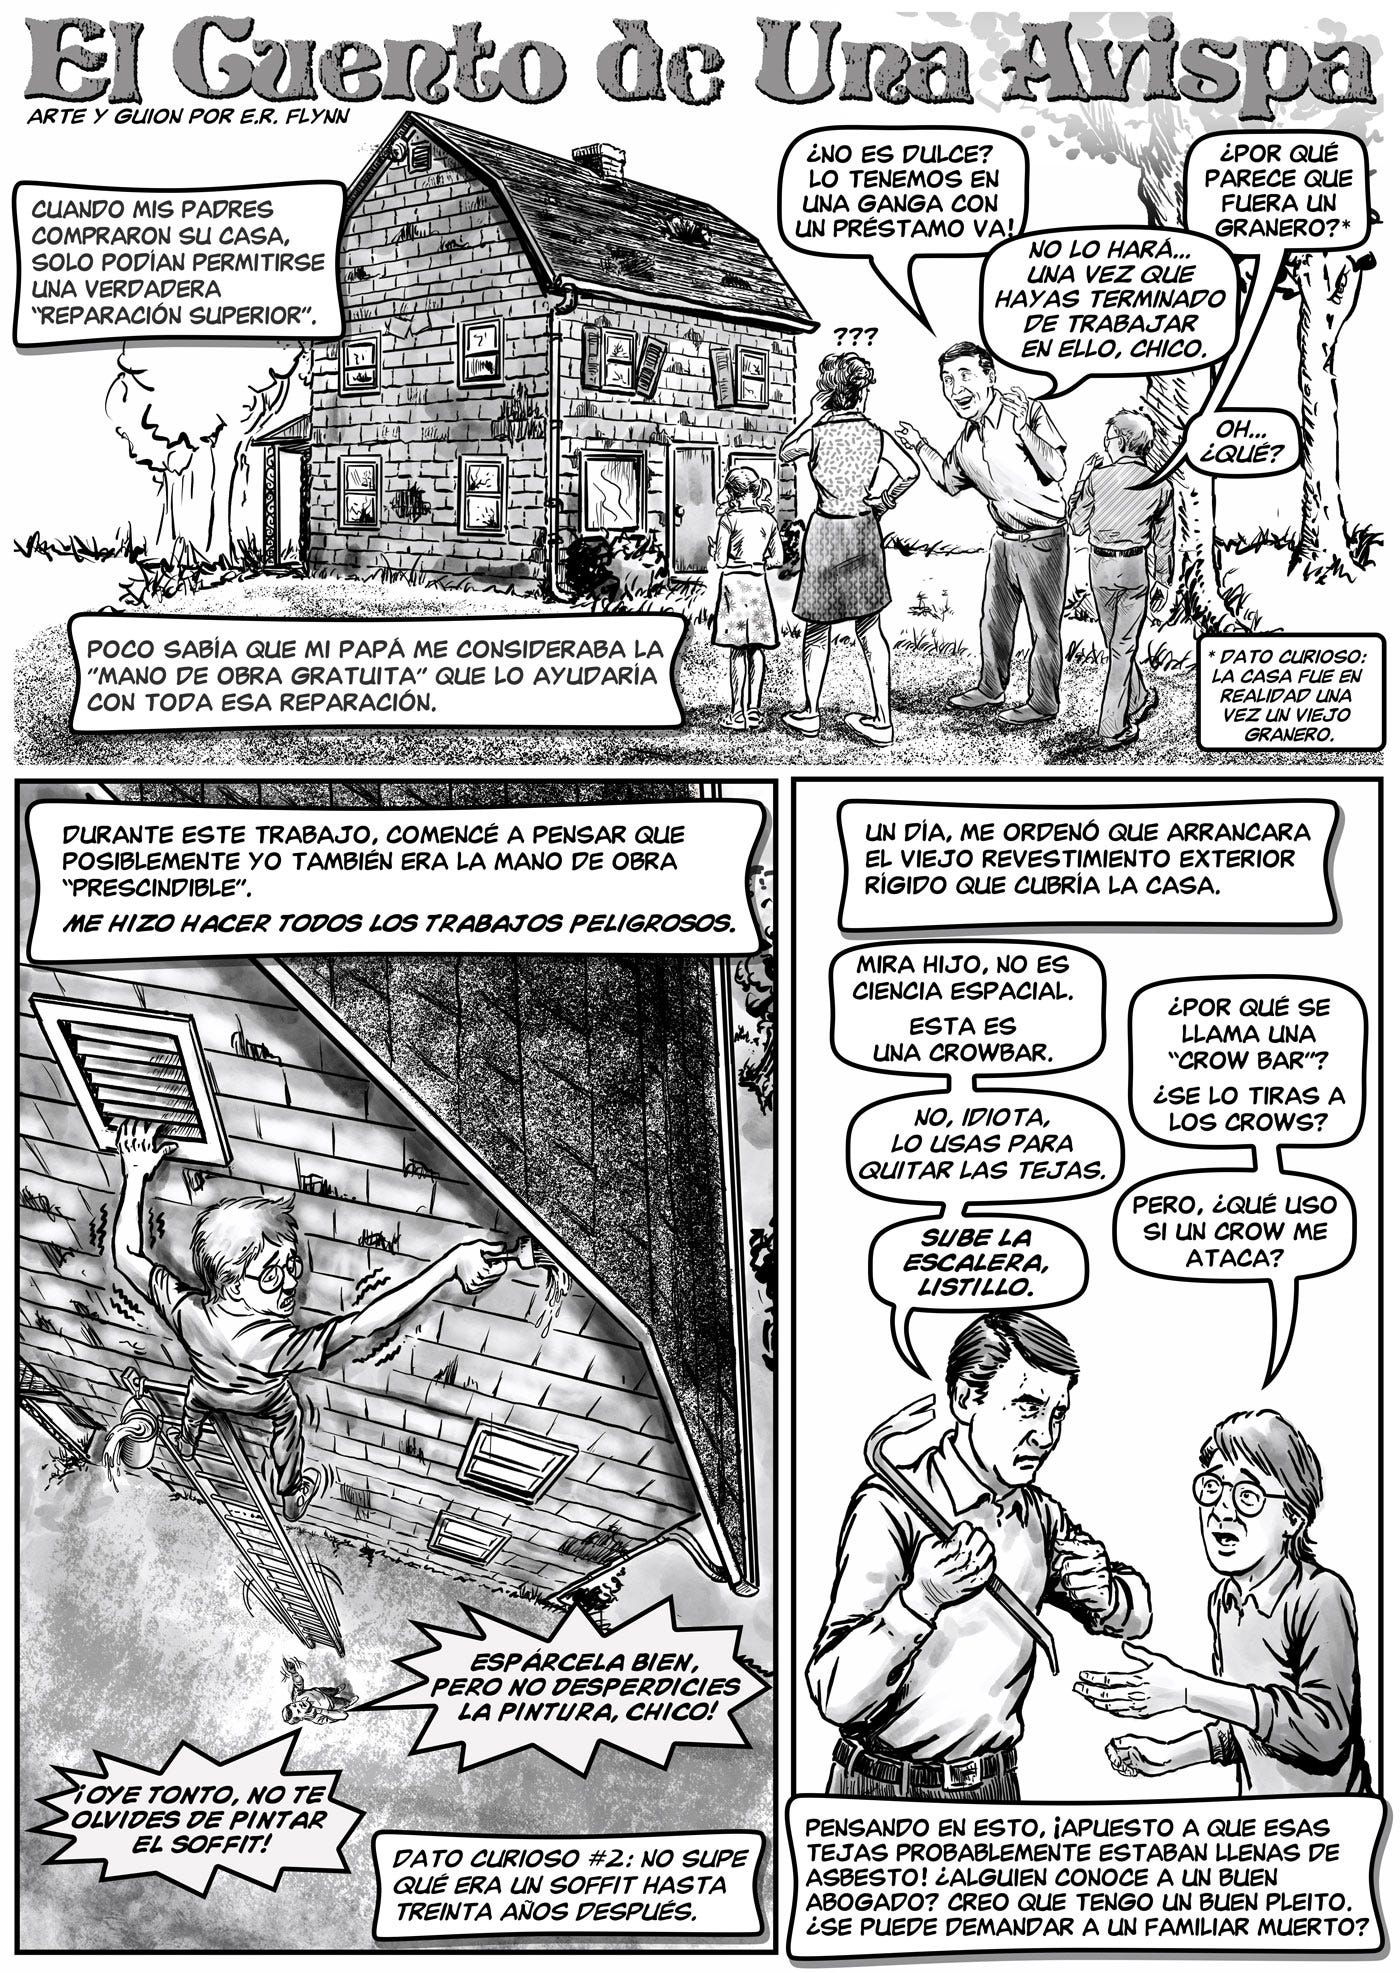 El Cuento De Una Avispa Page 1 comic by ER Flynn